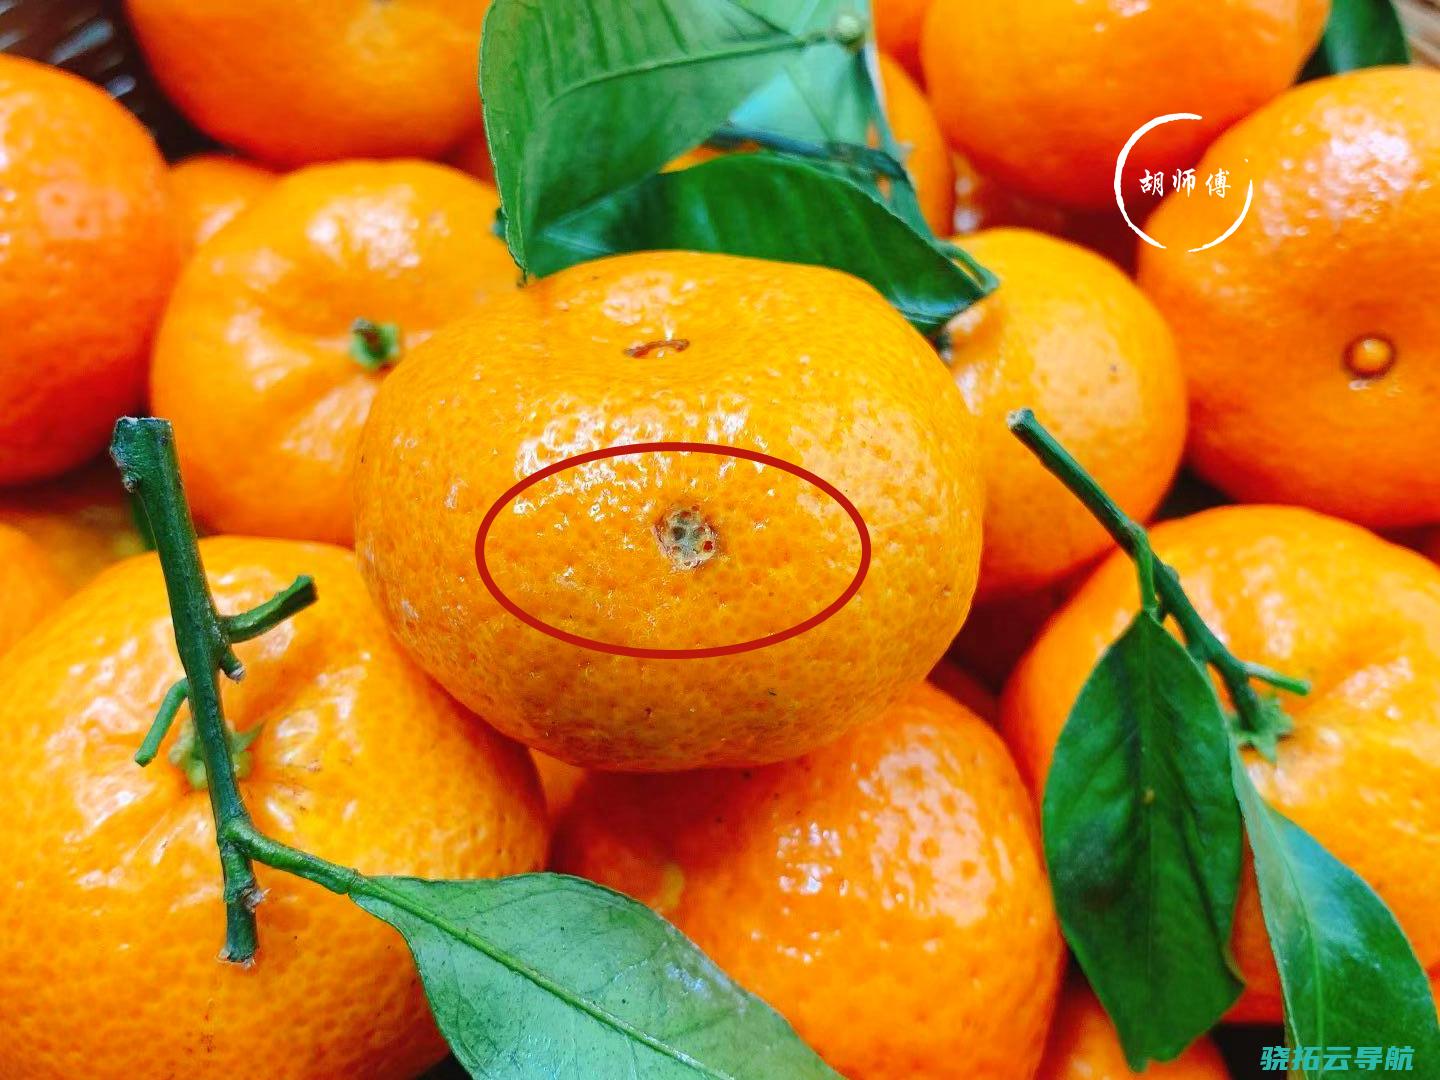 吃砂糖橘 为什么是全国过年的一致姿态